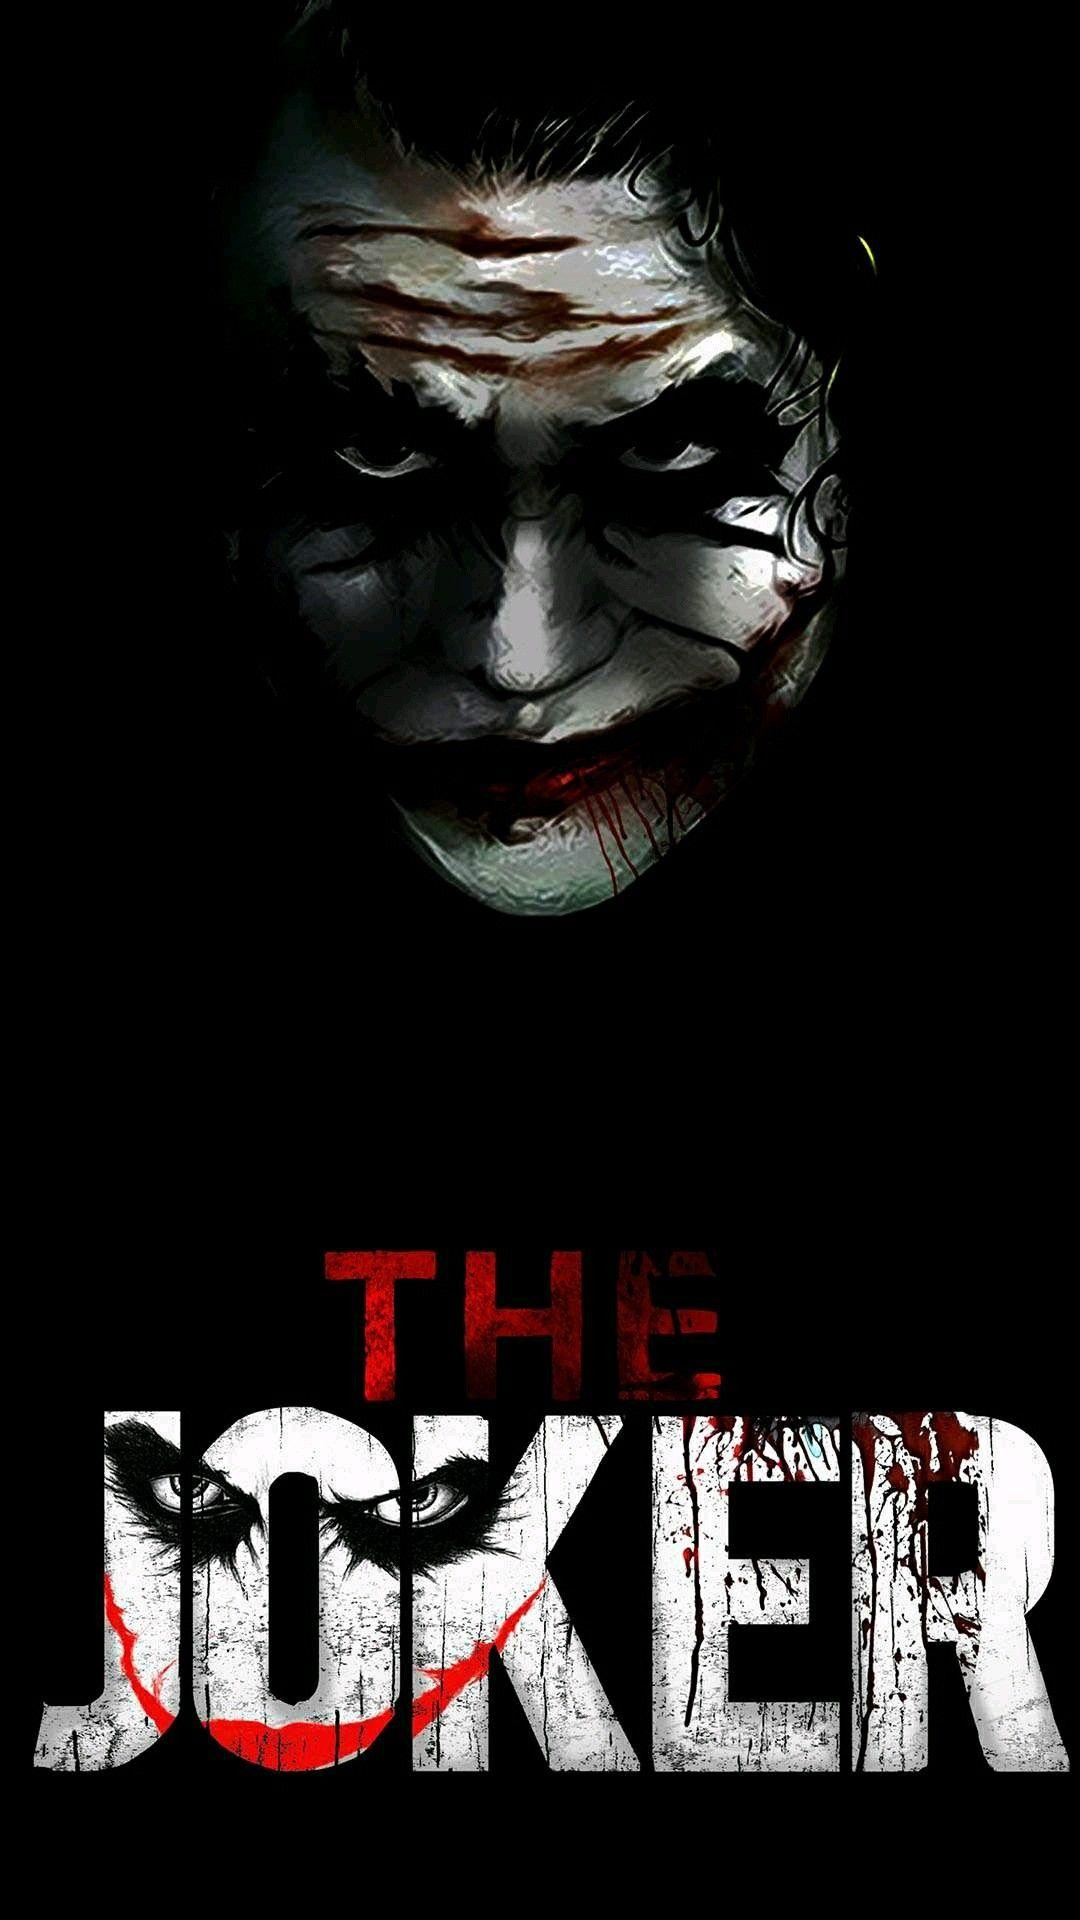 Mr joker. Joker pics, Joker wallpaper, Joker artwork